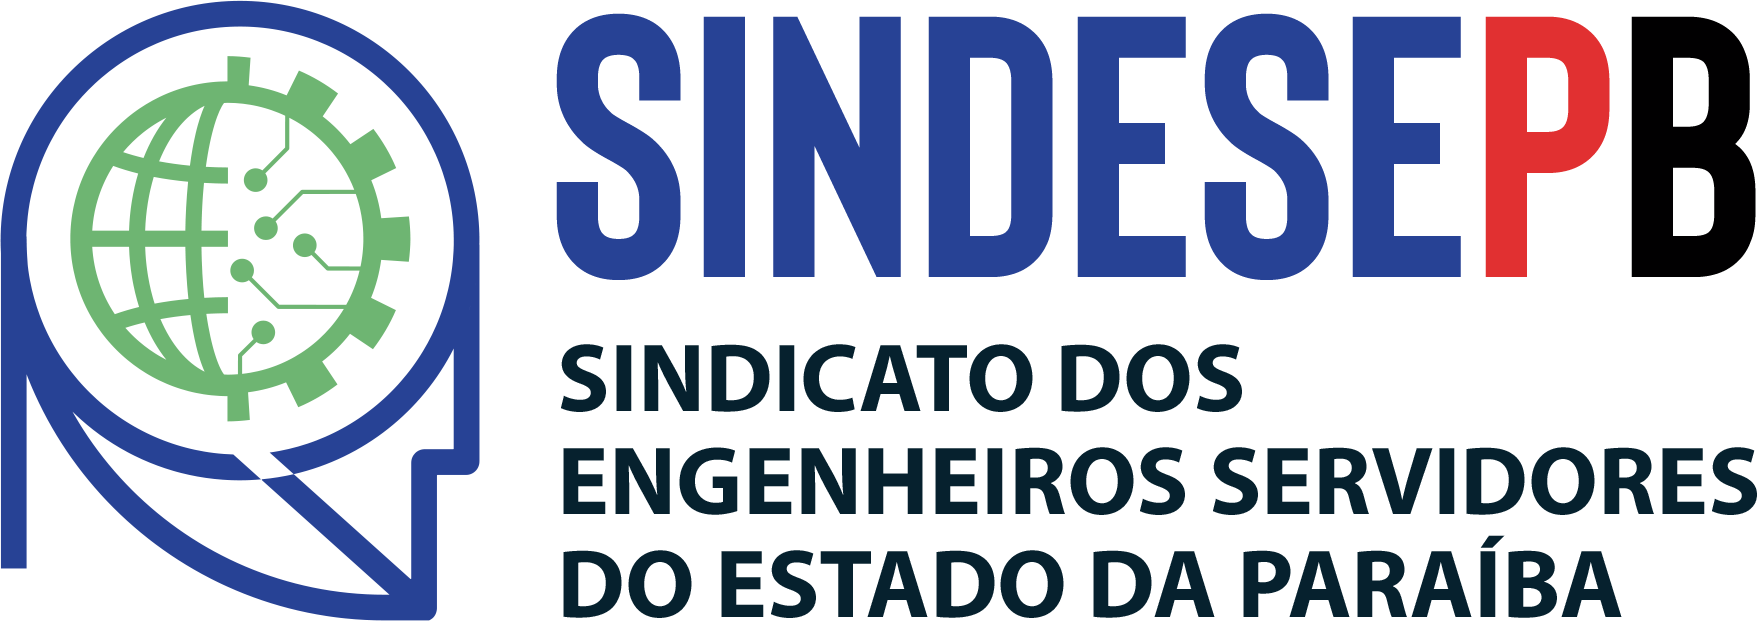 Sindicato dos Engenheiros Servidores do Estado da Paraíba